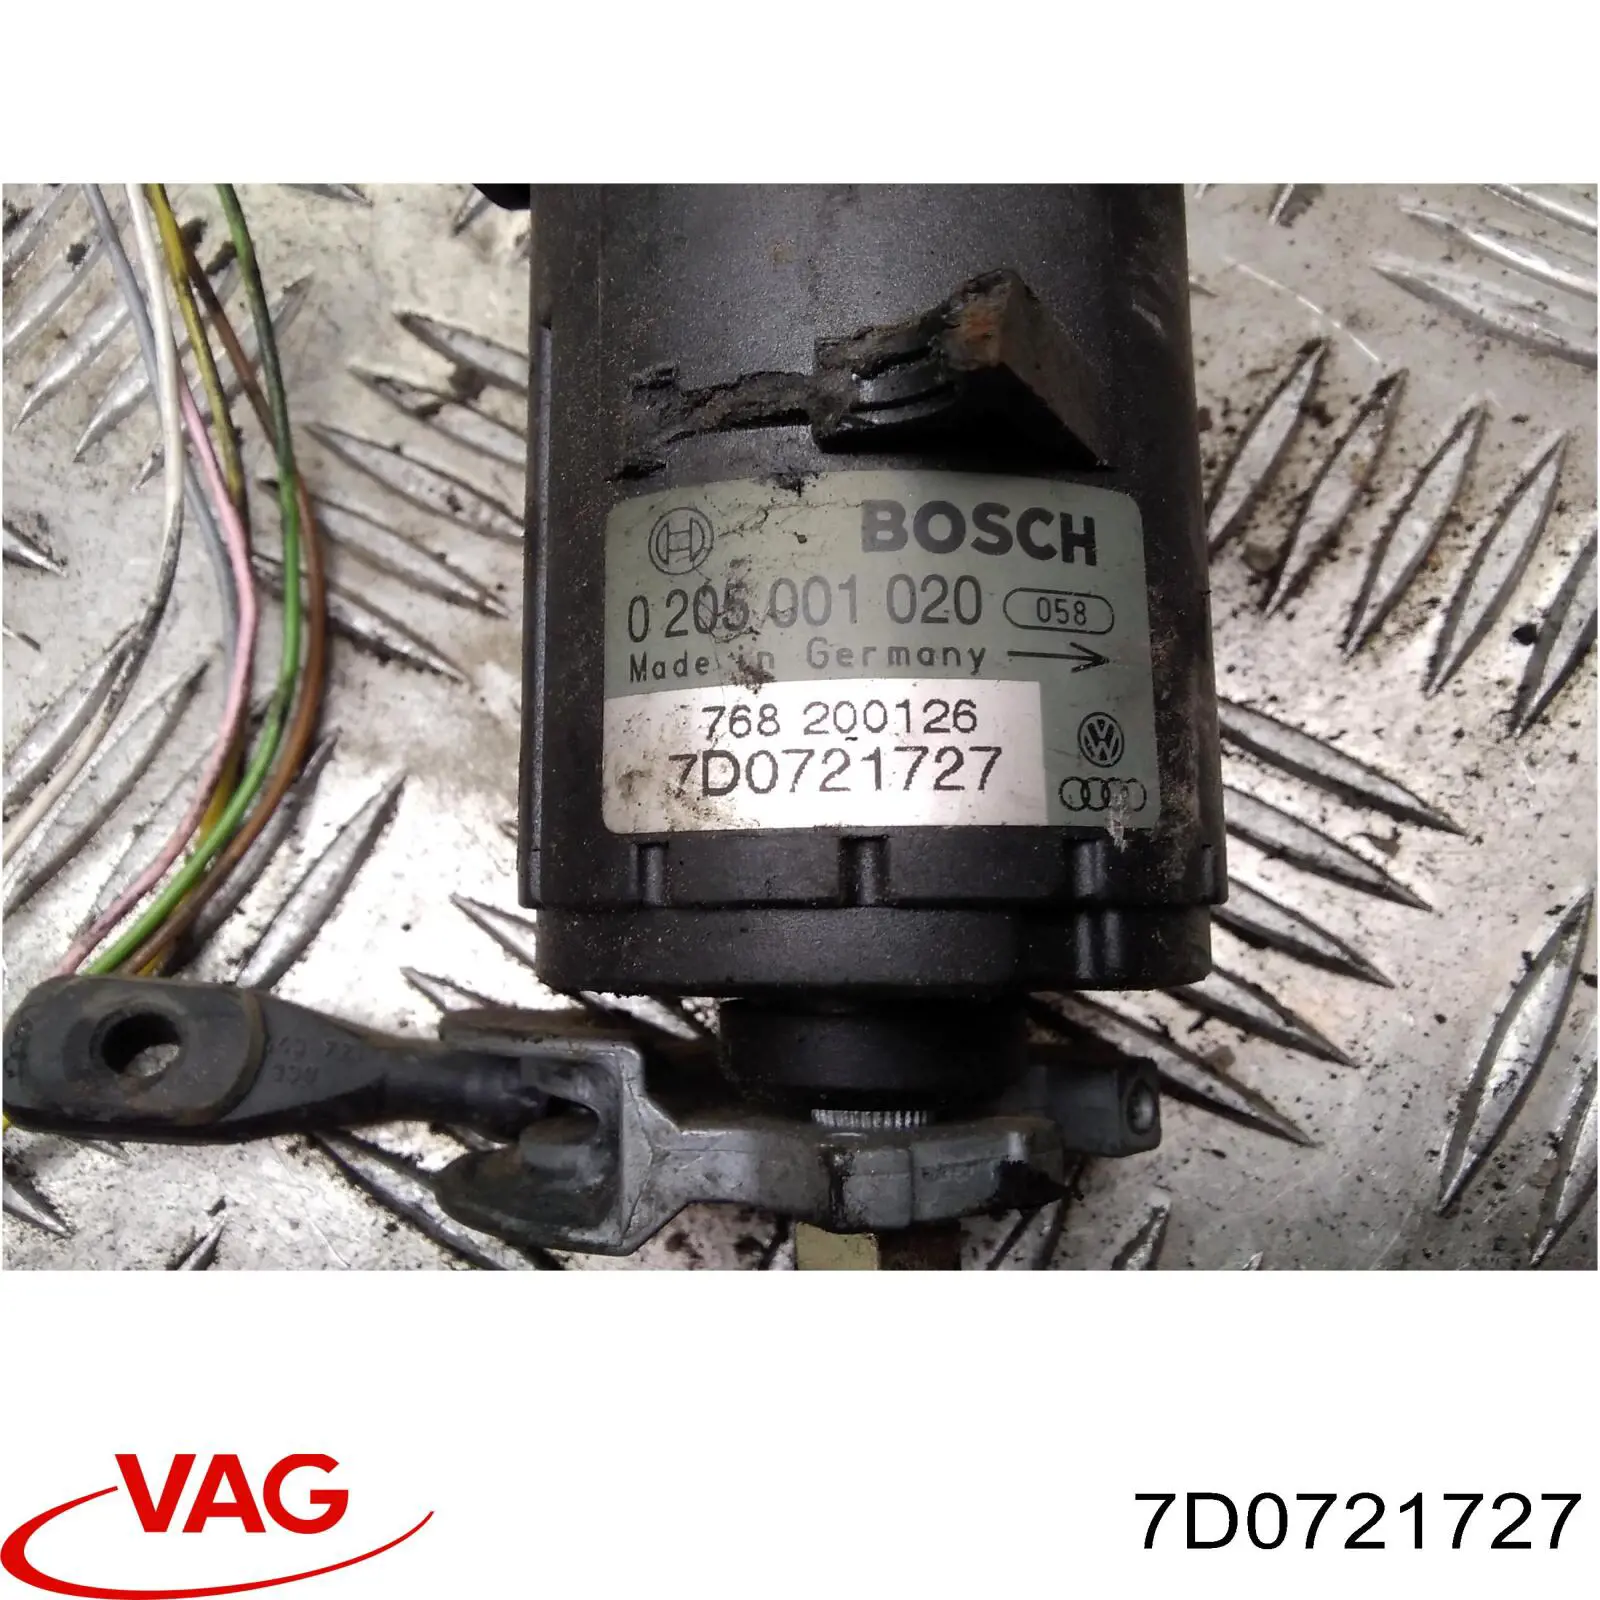 0205001020 Bosch датчик положения педали акселератора (газа)